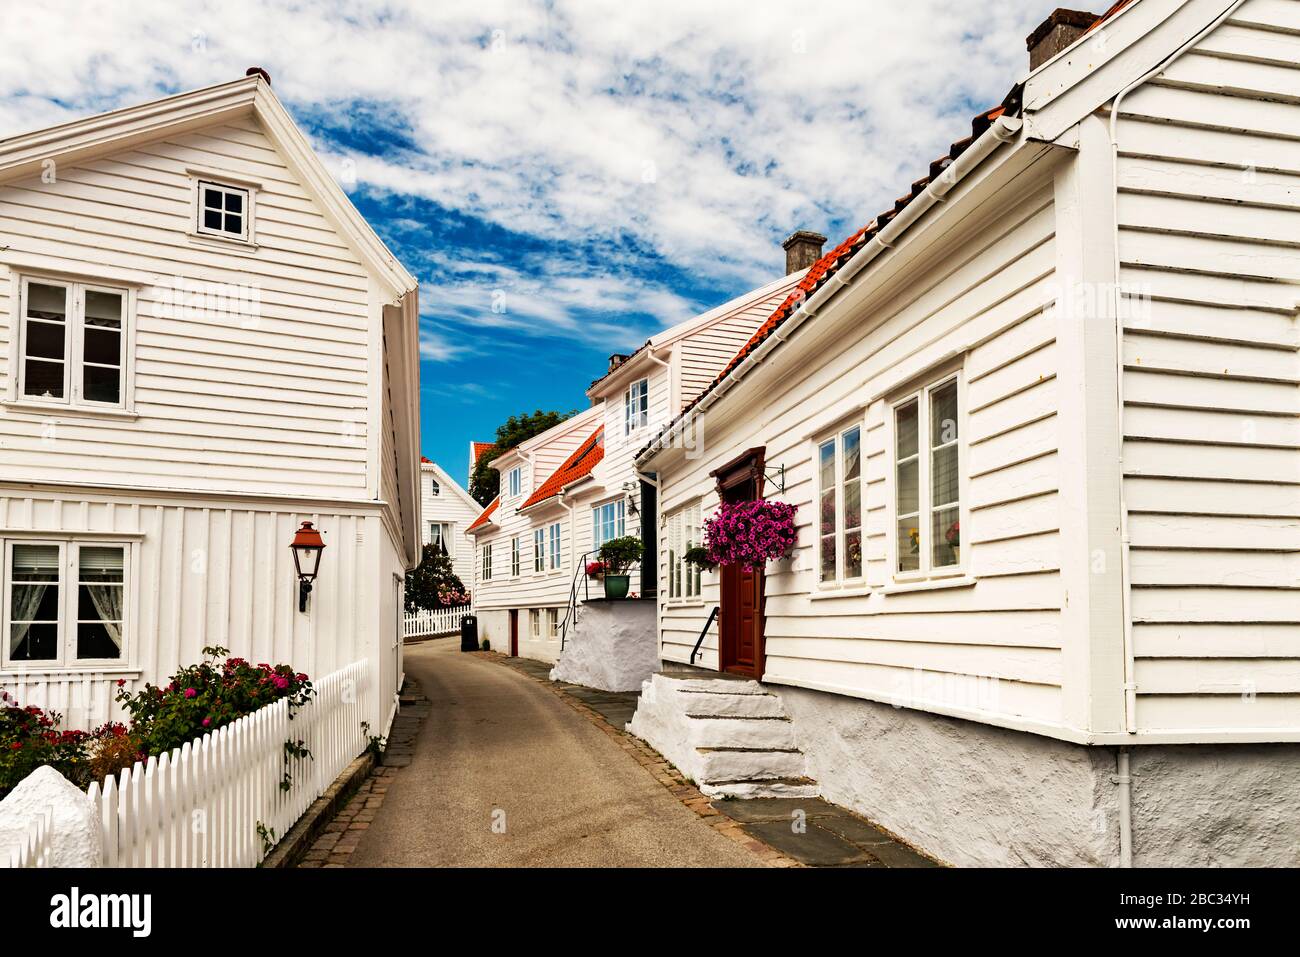 Bâtiments en bois blanc dans la rue du village de pêcheurs du XVIIIe siècle, Old Stavanger, Norvège Banque D'Images